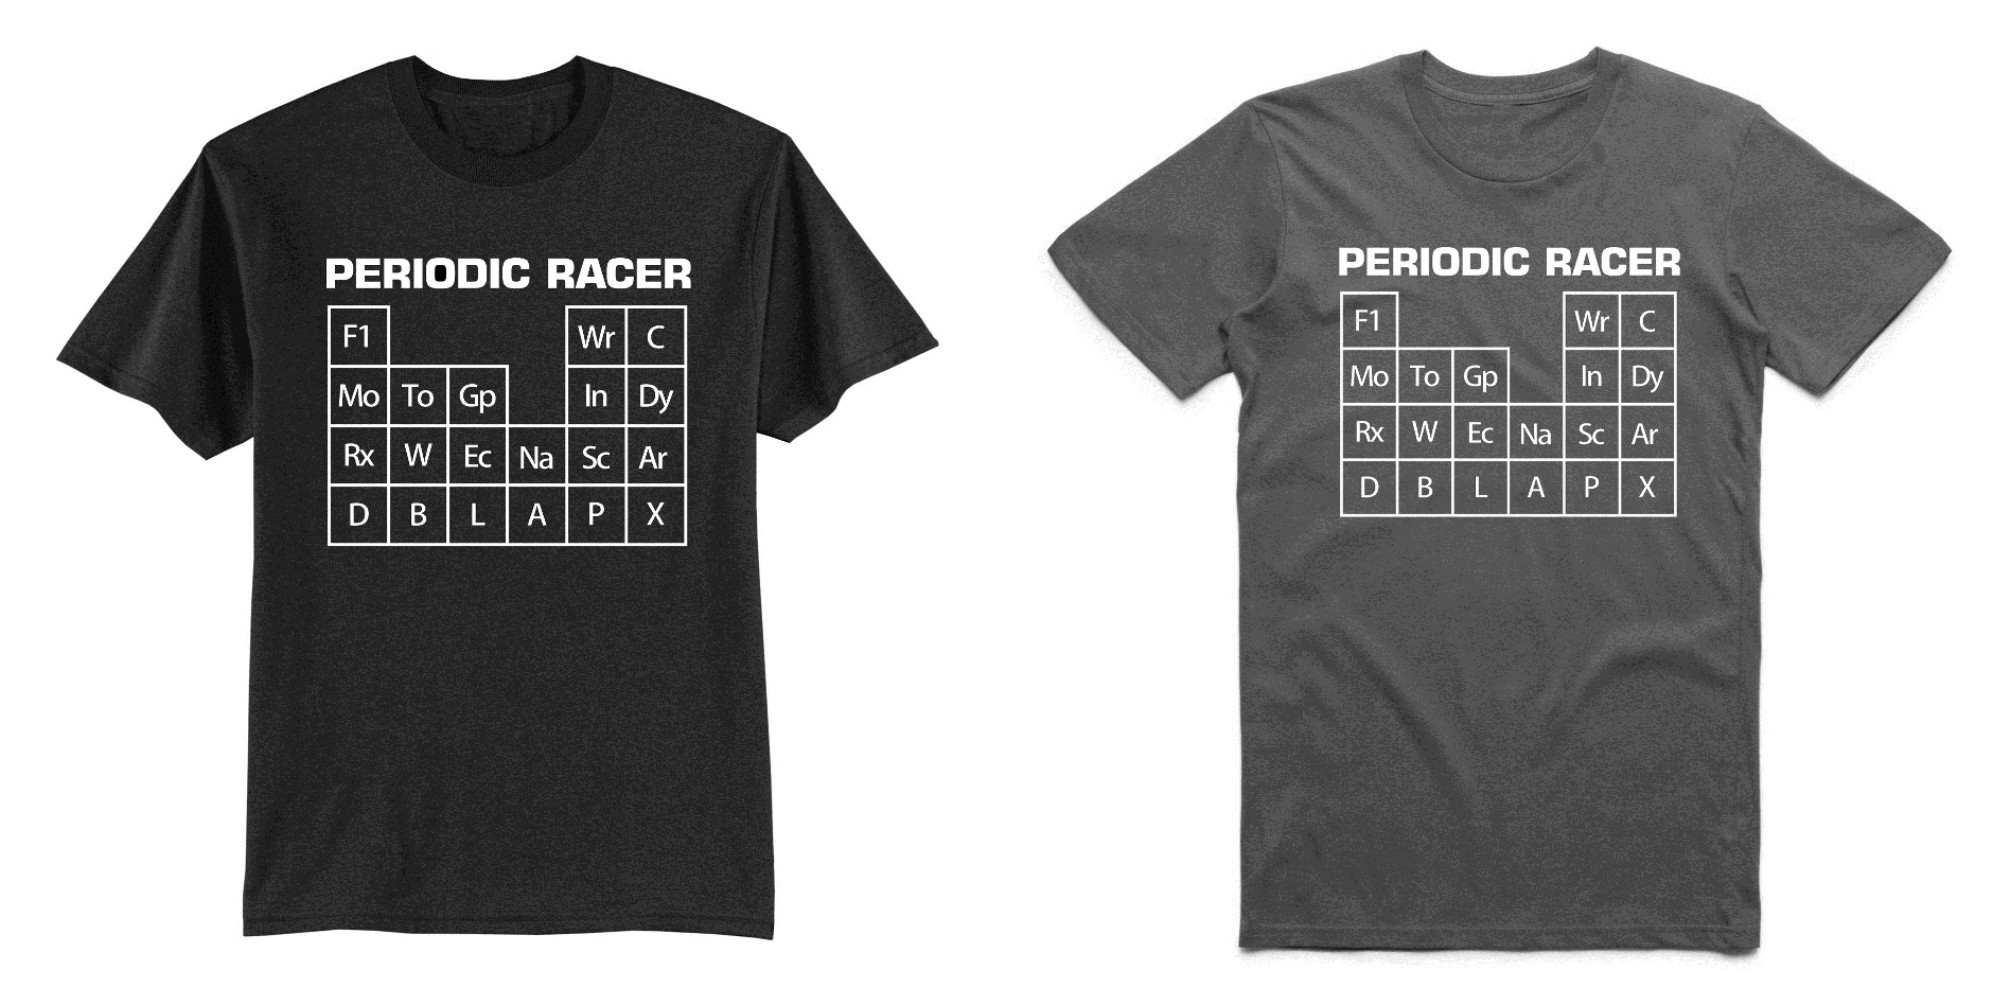 Periodic racer